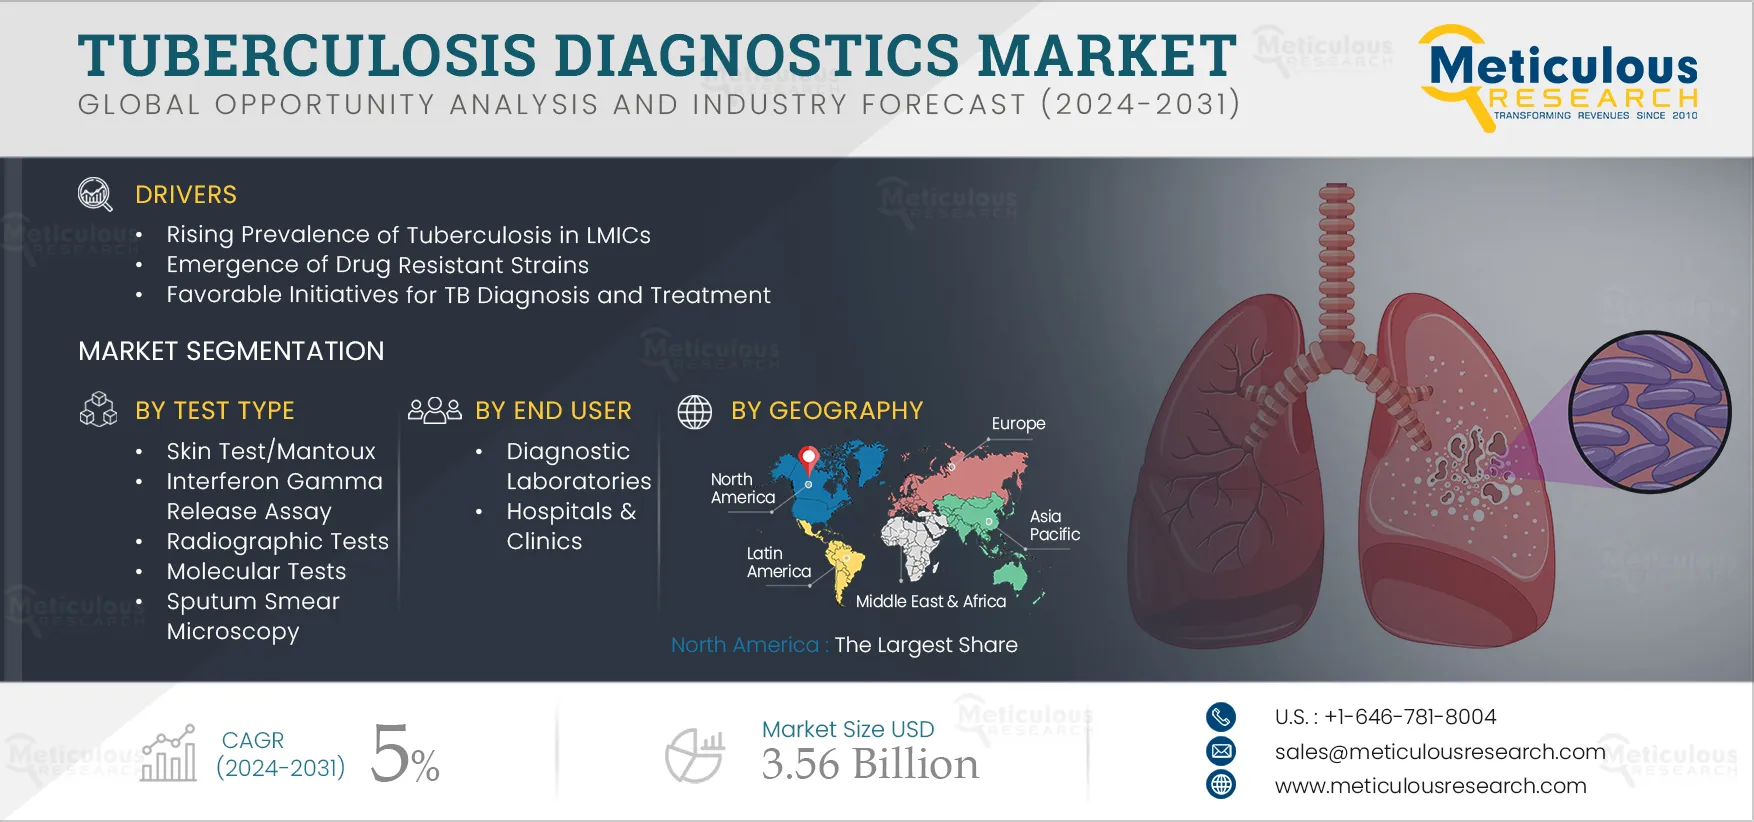 Tuberculosis Diagnostics Market 